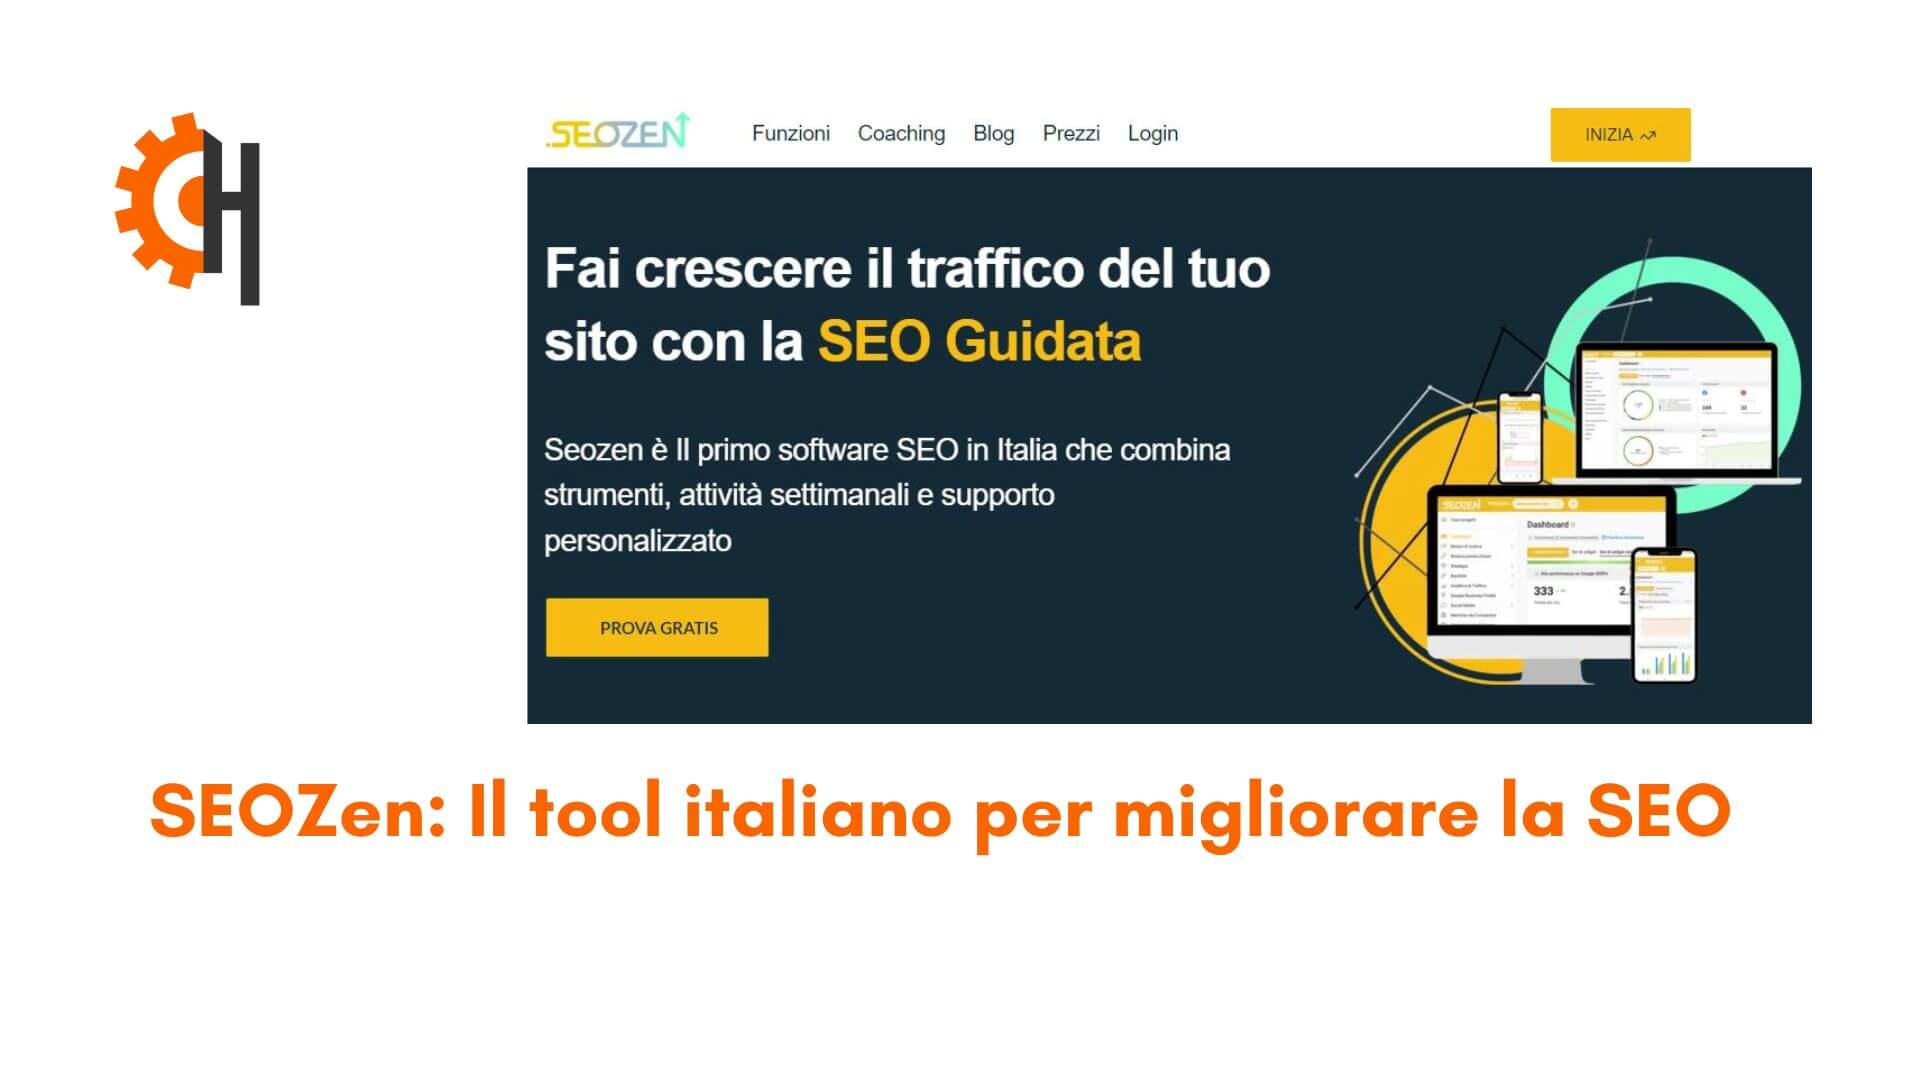 SEOZen: Un tool italiano per migliorare la SEO